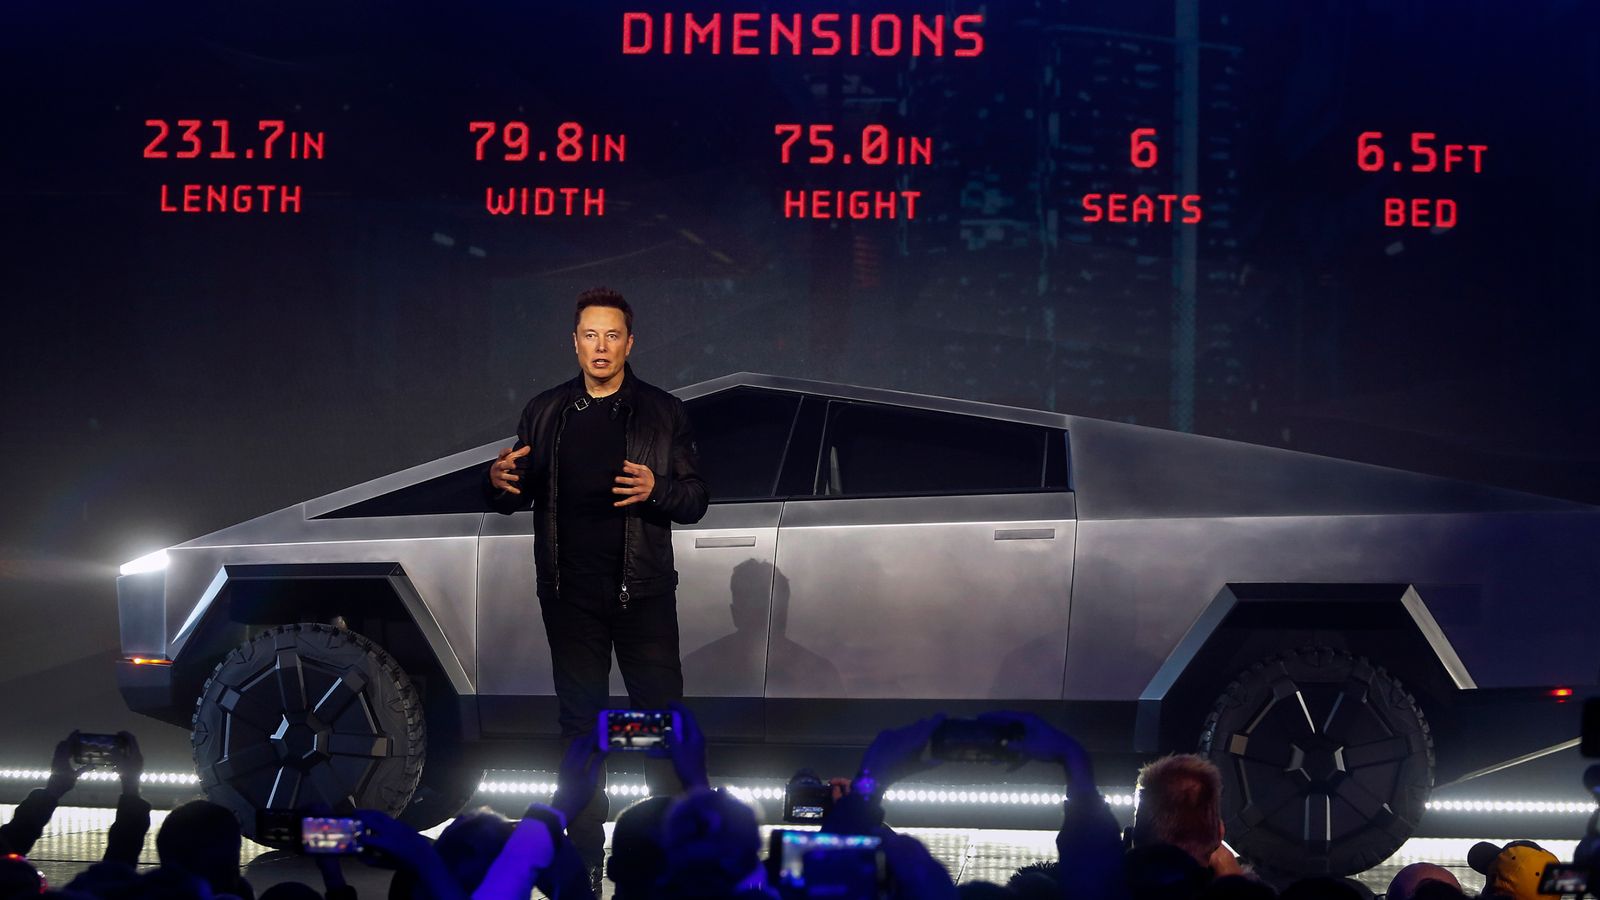 La Tesla d'Elon Musk souffre d'une baisse des ventes, un « désastre total » pour le milliardaire |  Actualité économique